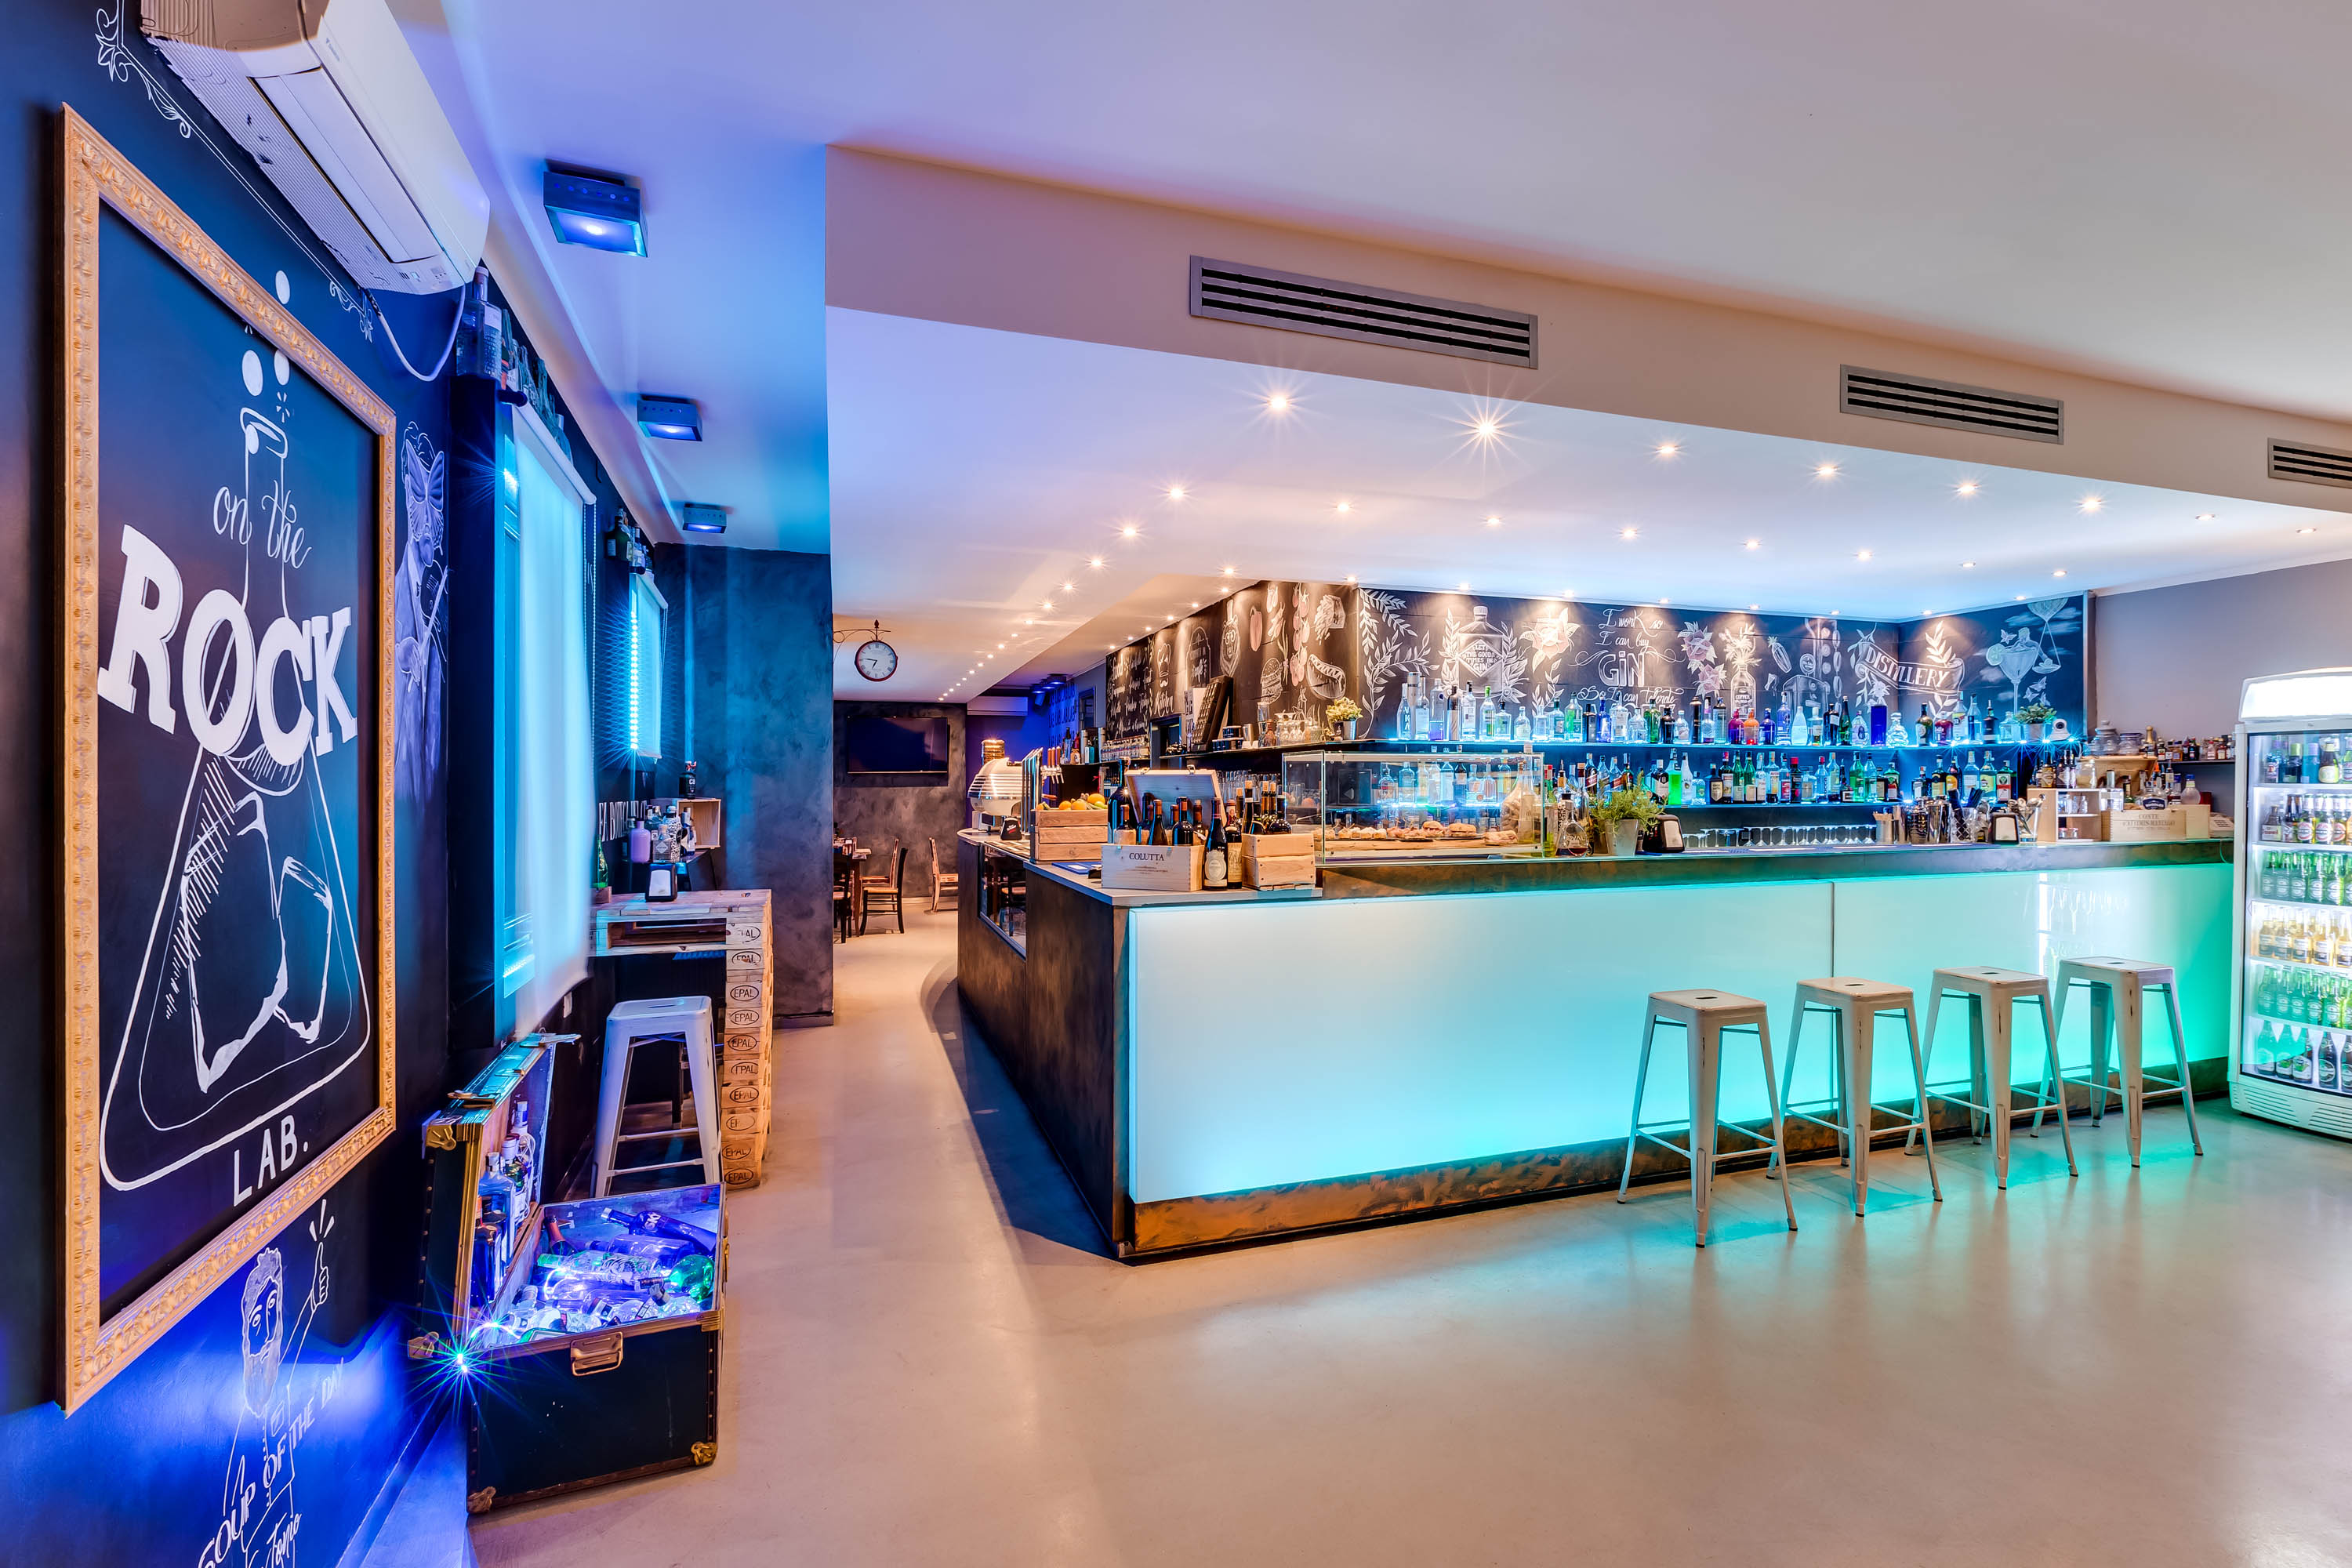 Servizi fotografici ristoranti foto ingresso bar serale illuminato a led con lavagna e luci blu viola verdi